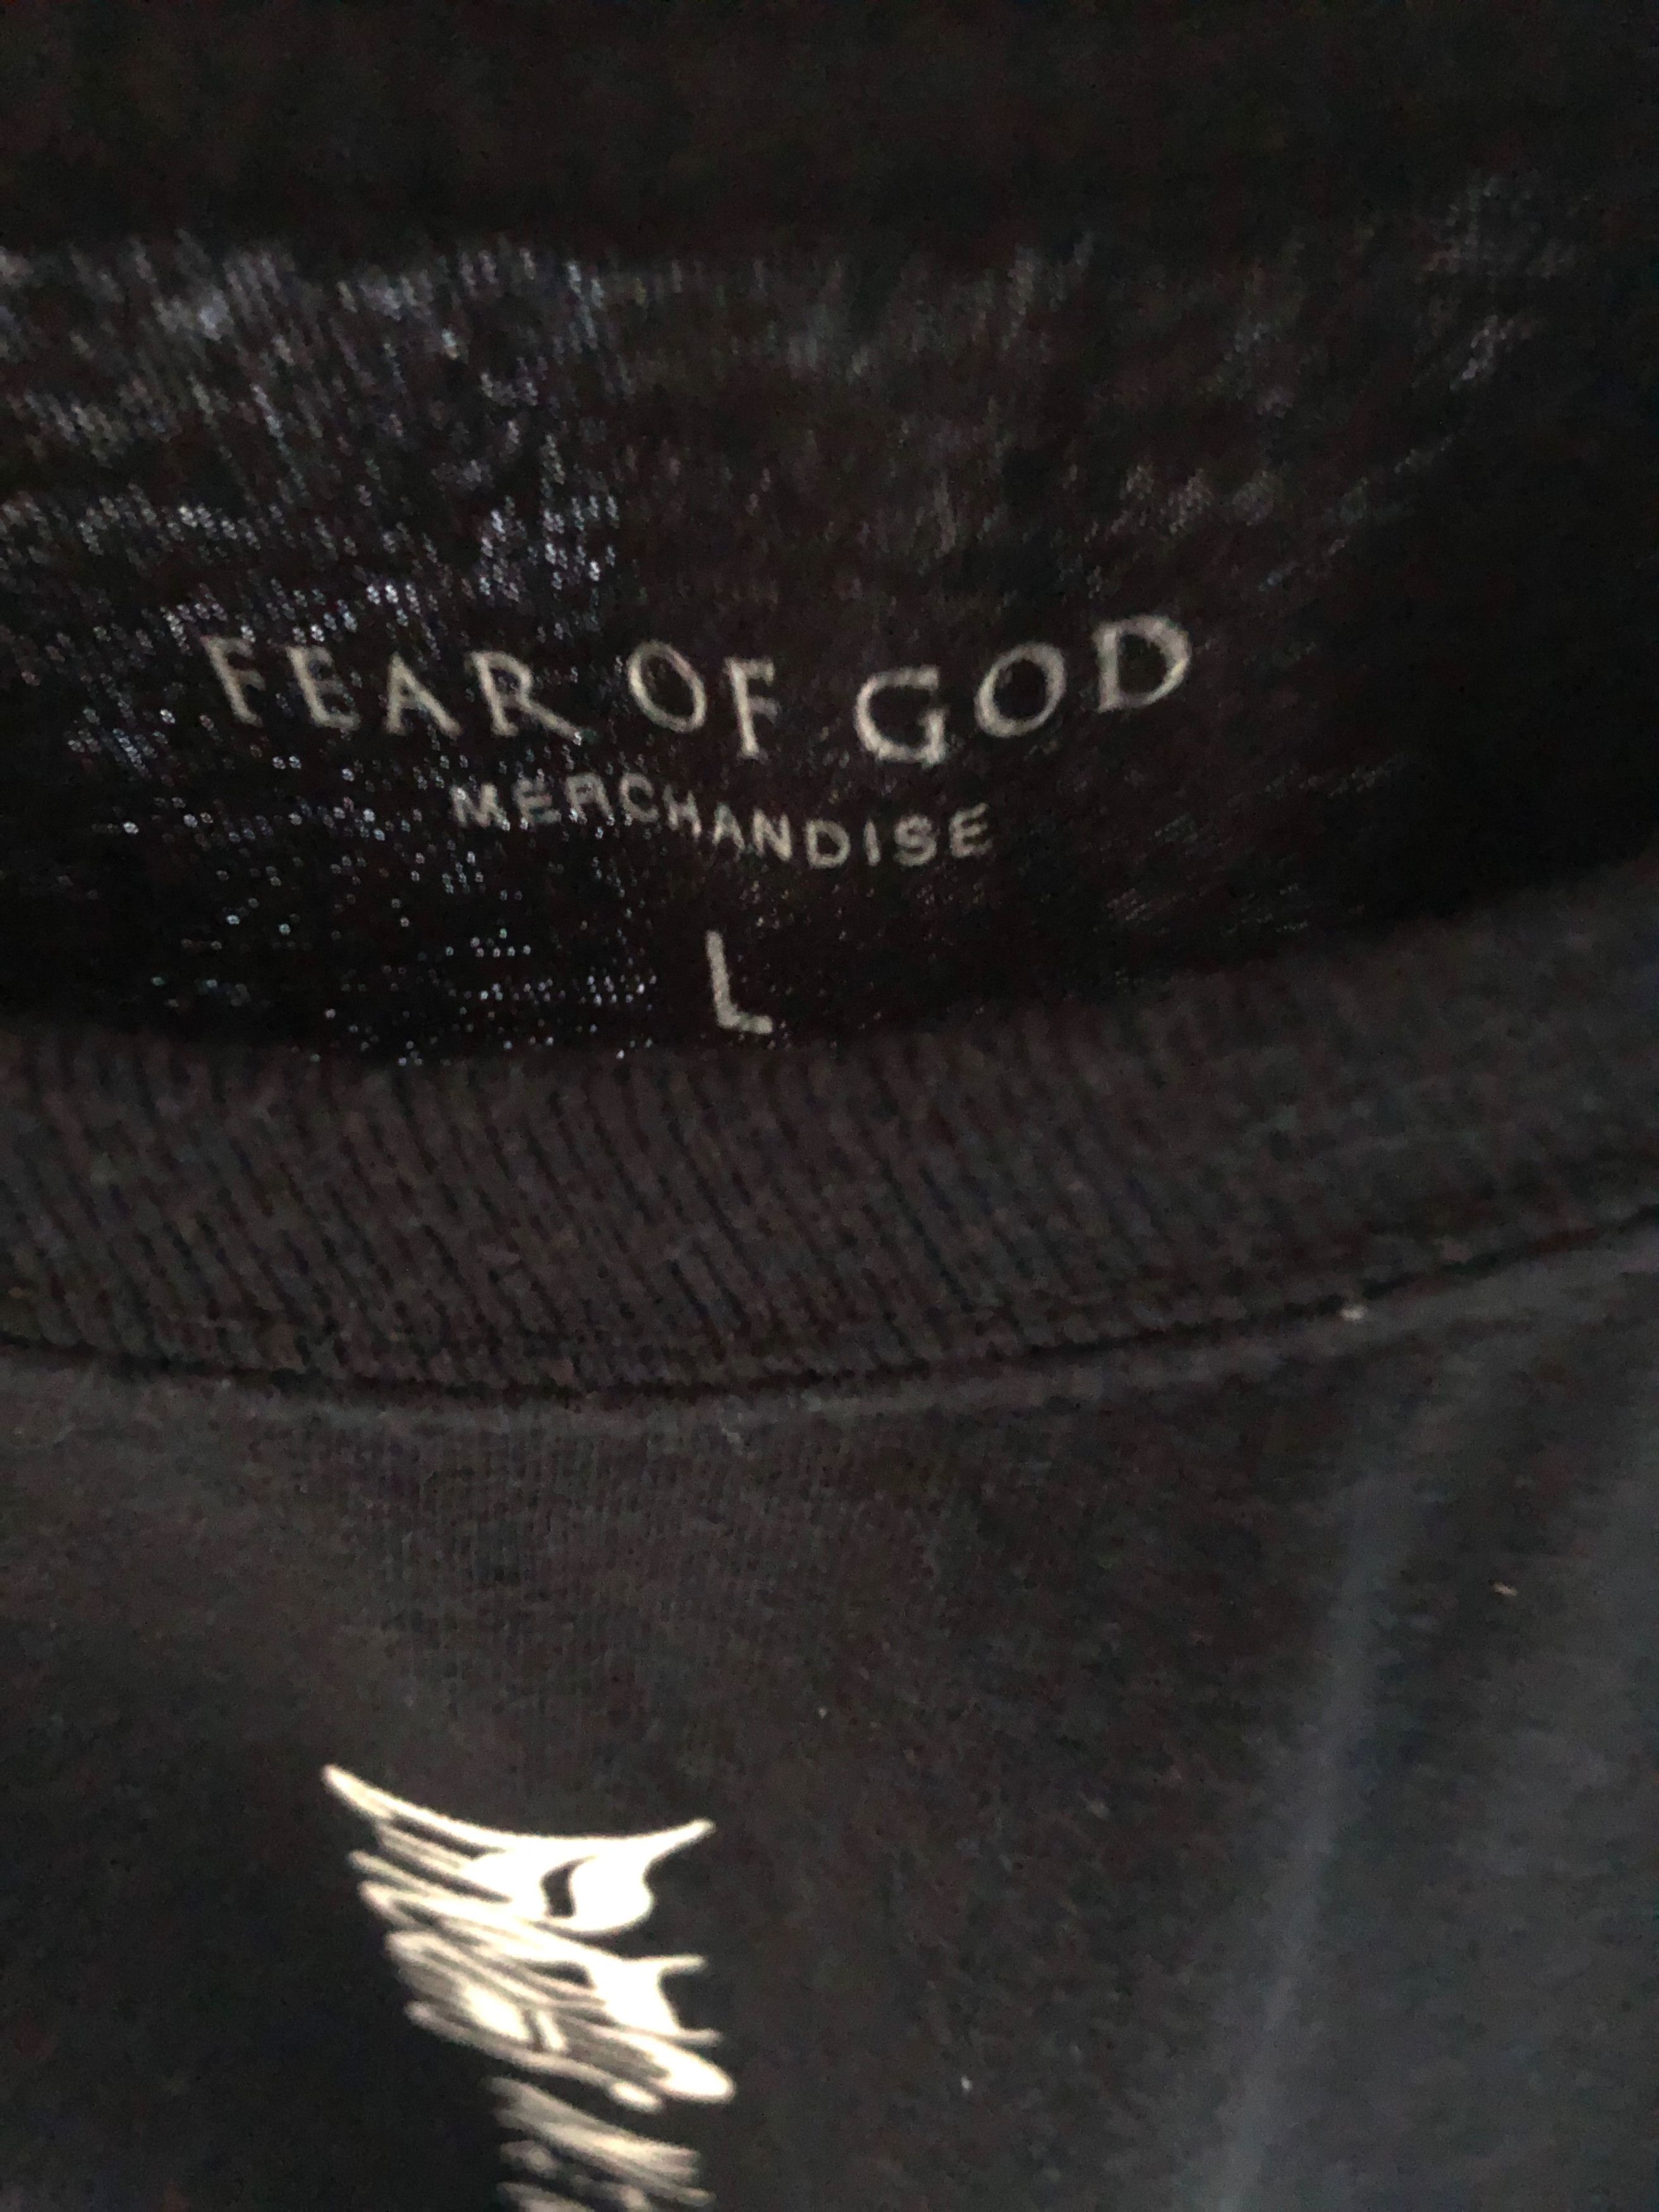 Fear of God Fear of God Jay Z Long Sleeve Tour Shirt 4:44 | Grailed